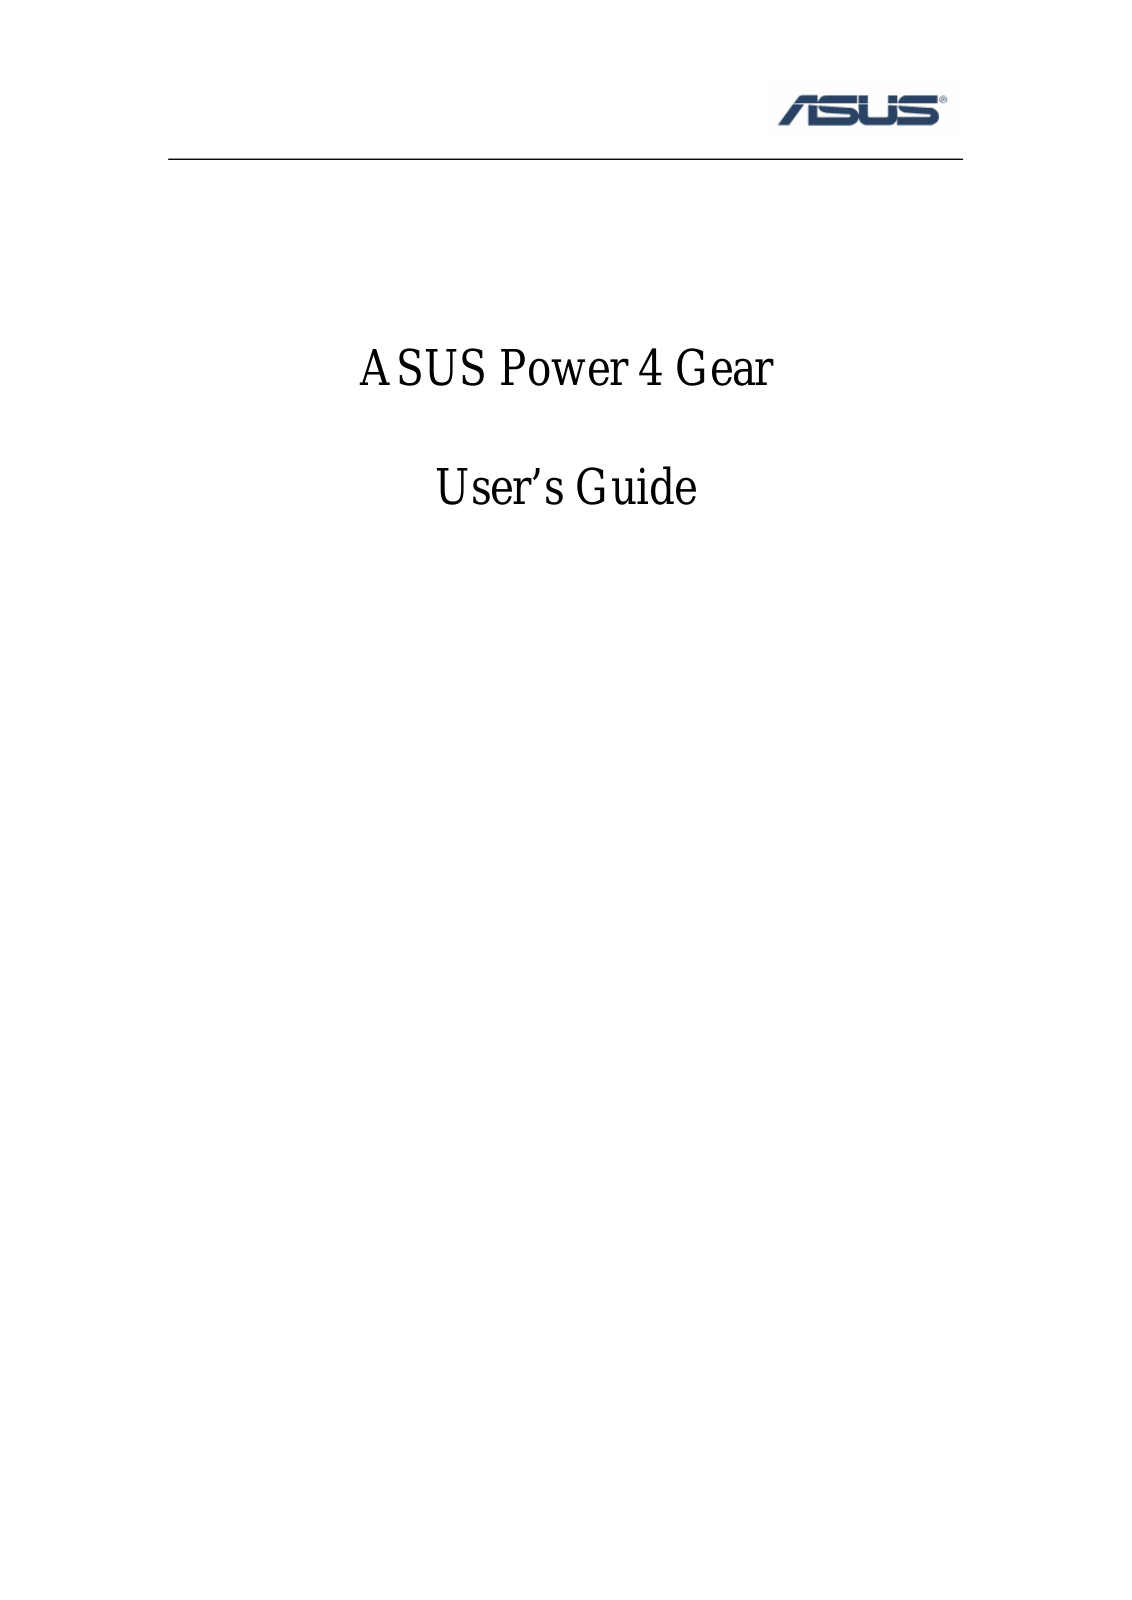 Asus Power 4 Gear User Manual